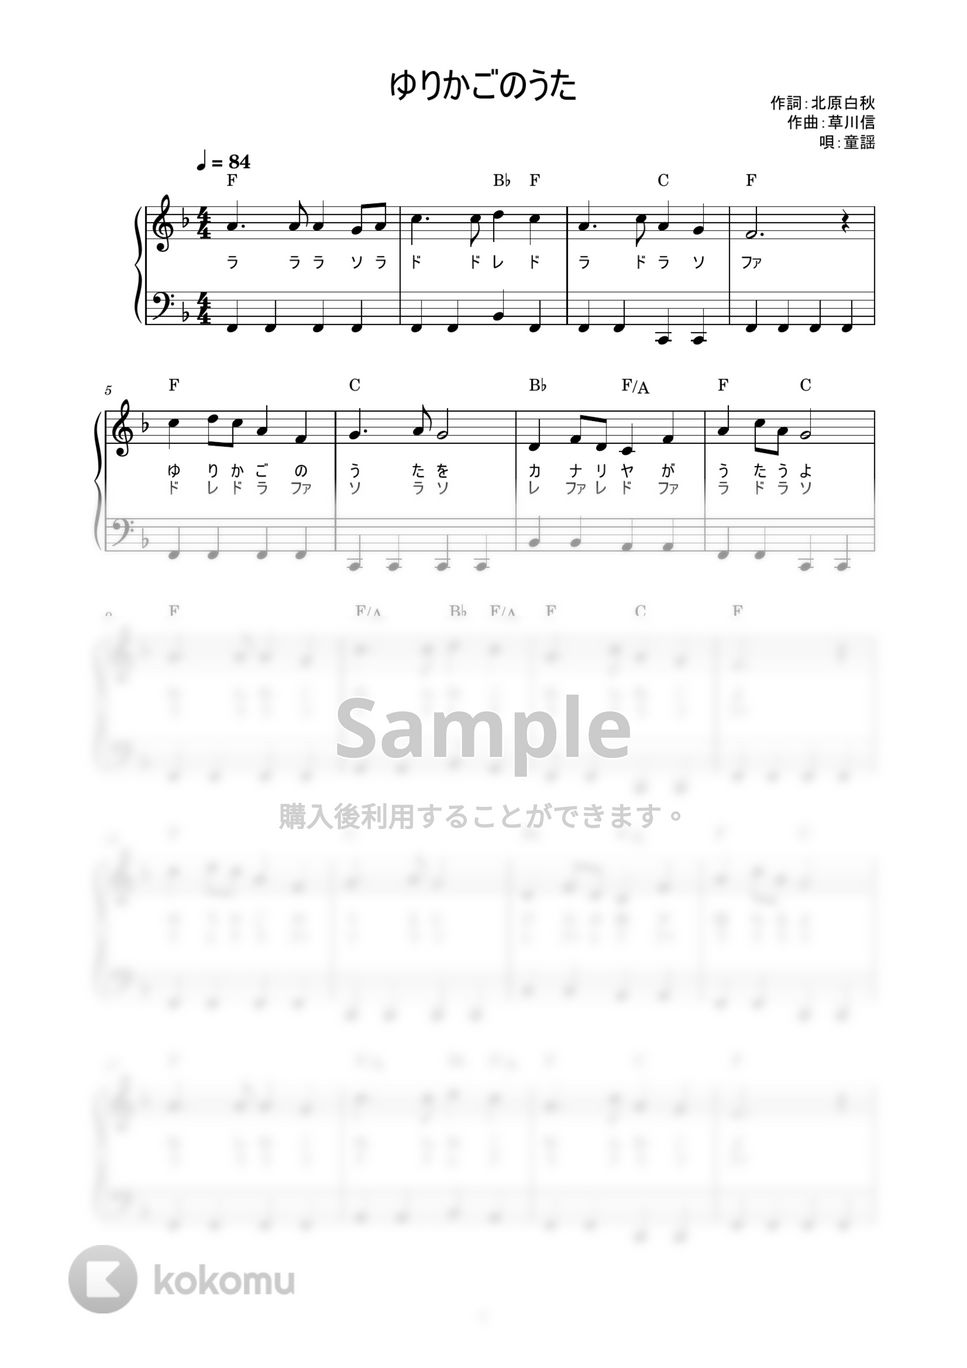 ゆりかごのうた (かんたん / 歌詞付き / ドレミ付き / 初心者) by piano.tokyo